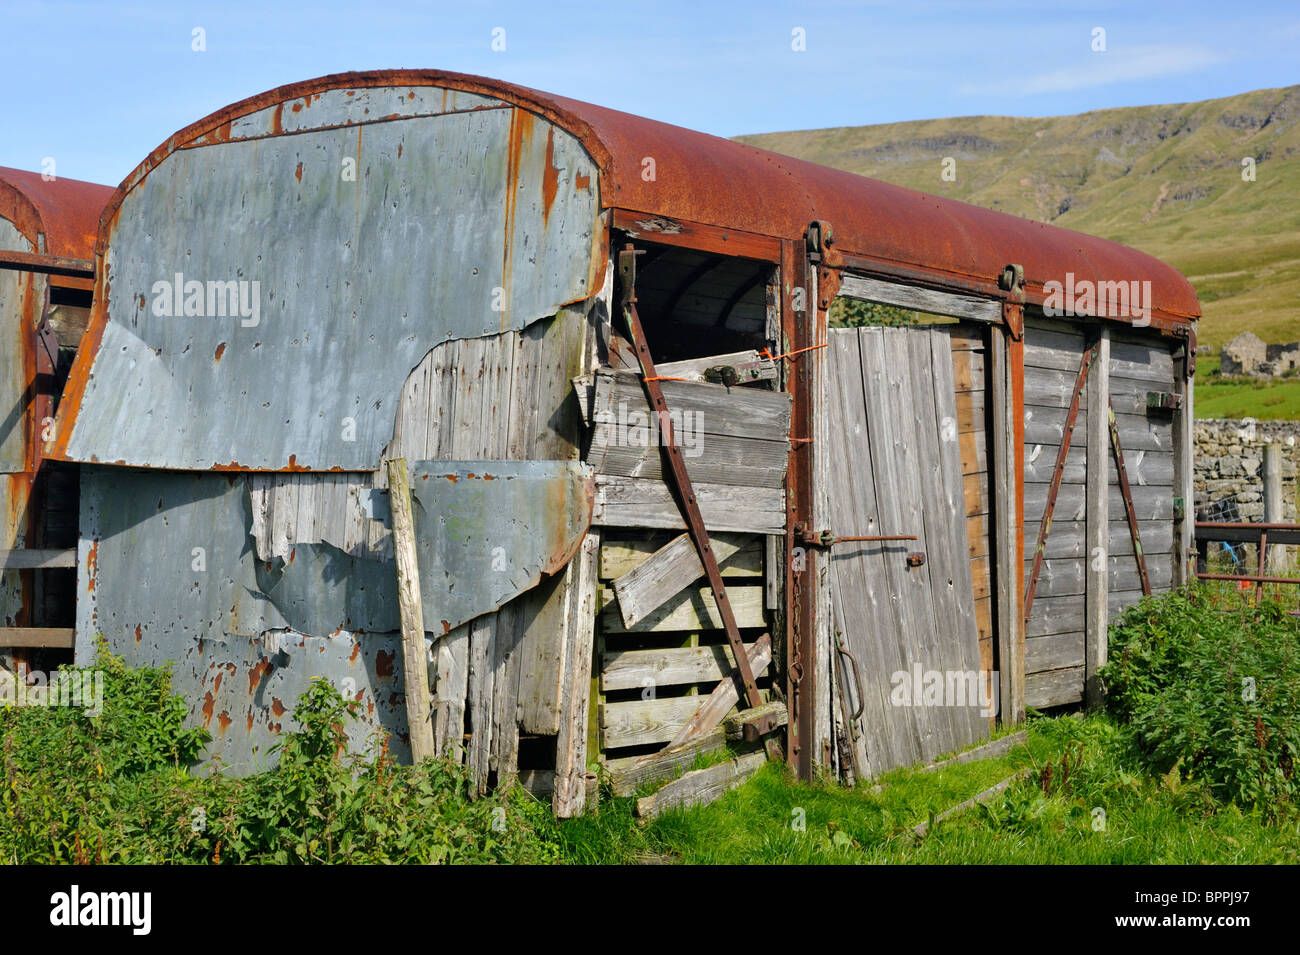 Verlassenen Eisenbahnwaggon als Scheune auf Hof verwendet. Deepgill Farm, Mallerstang, Cumbria, England, Vereinigtes Königreich, Europa. Stockfoto